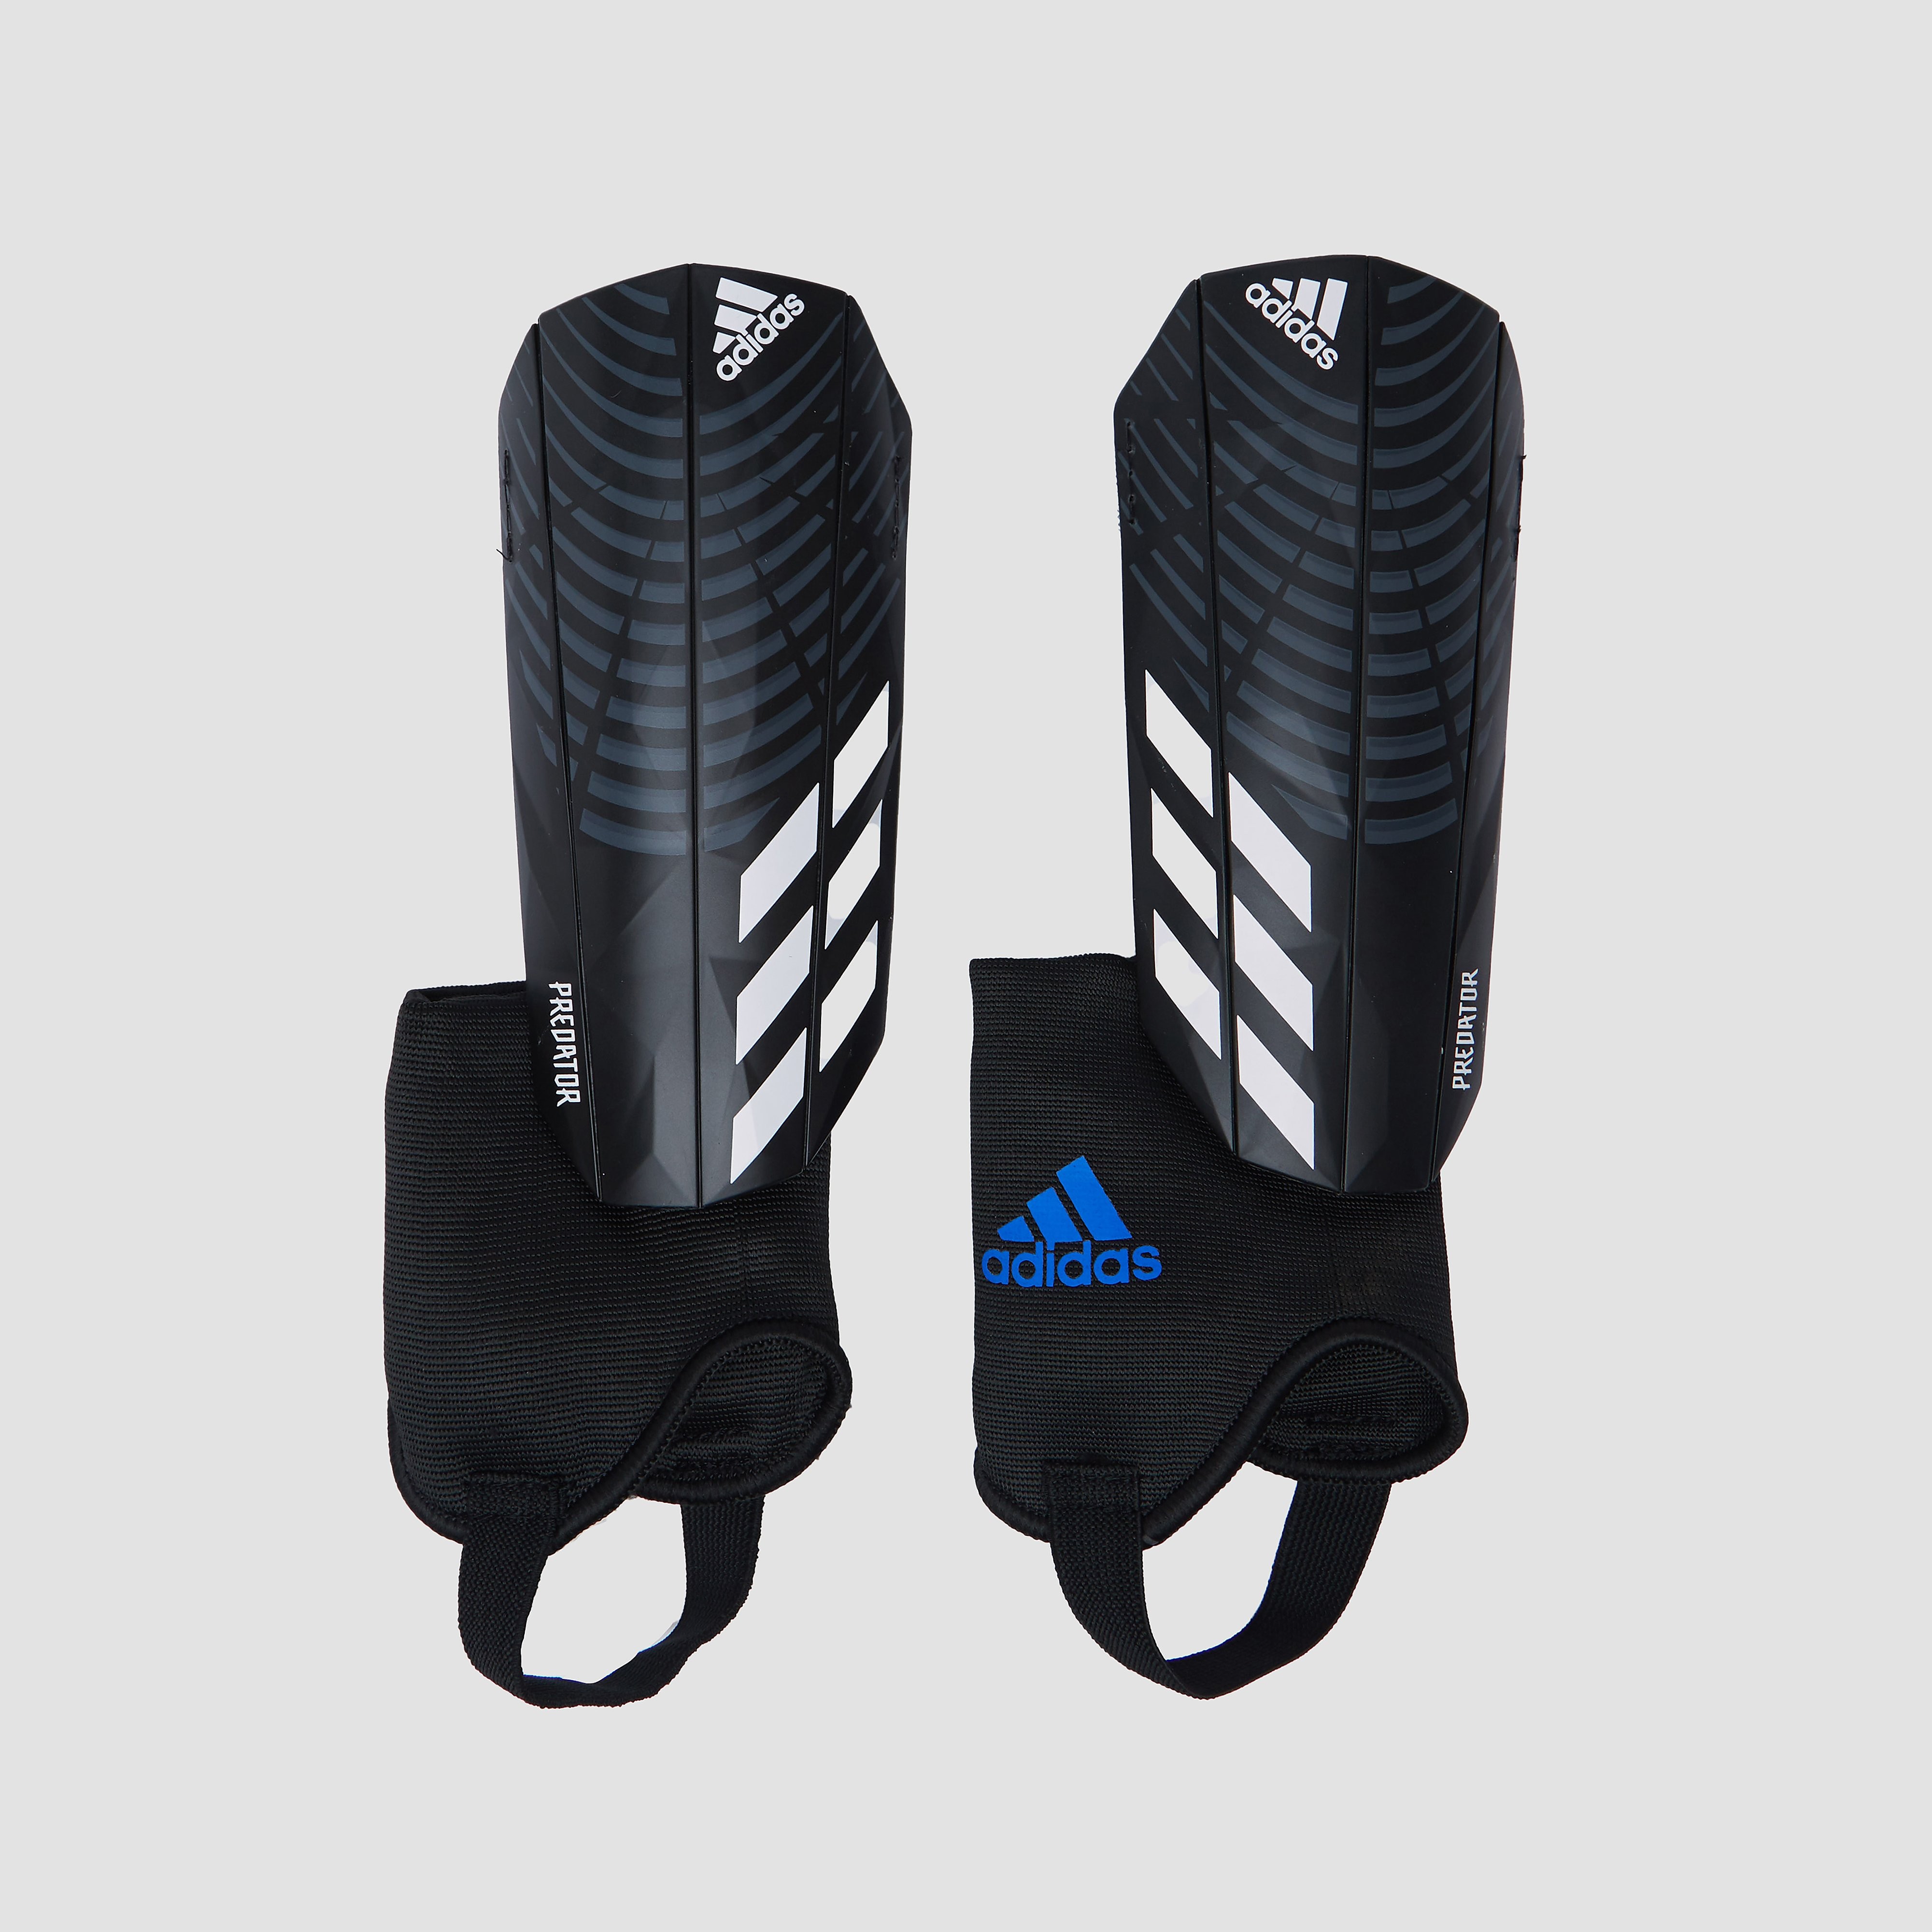 adidas Adidas x predator match scheenbeschermers zwart/grijs heren